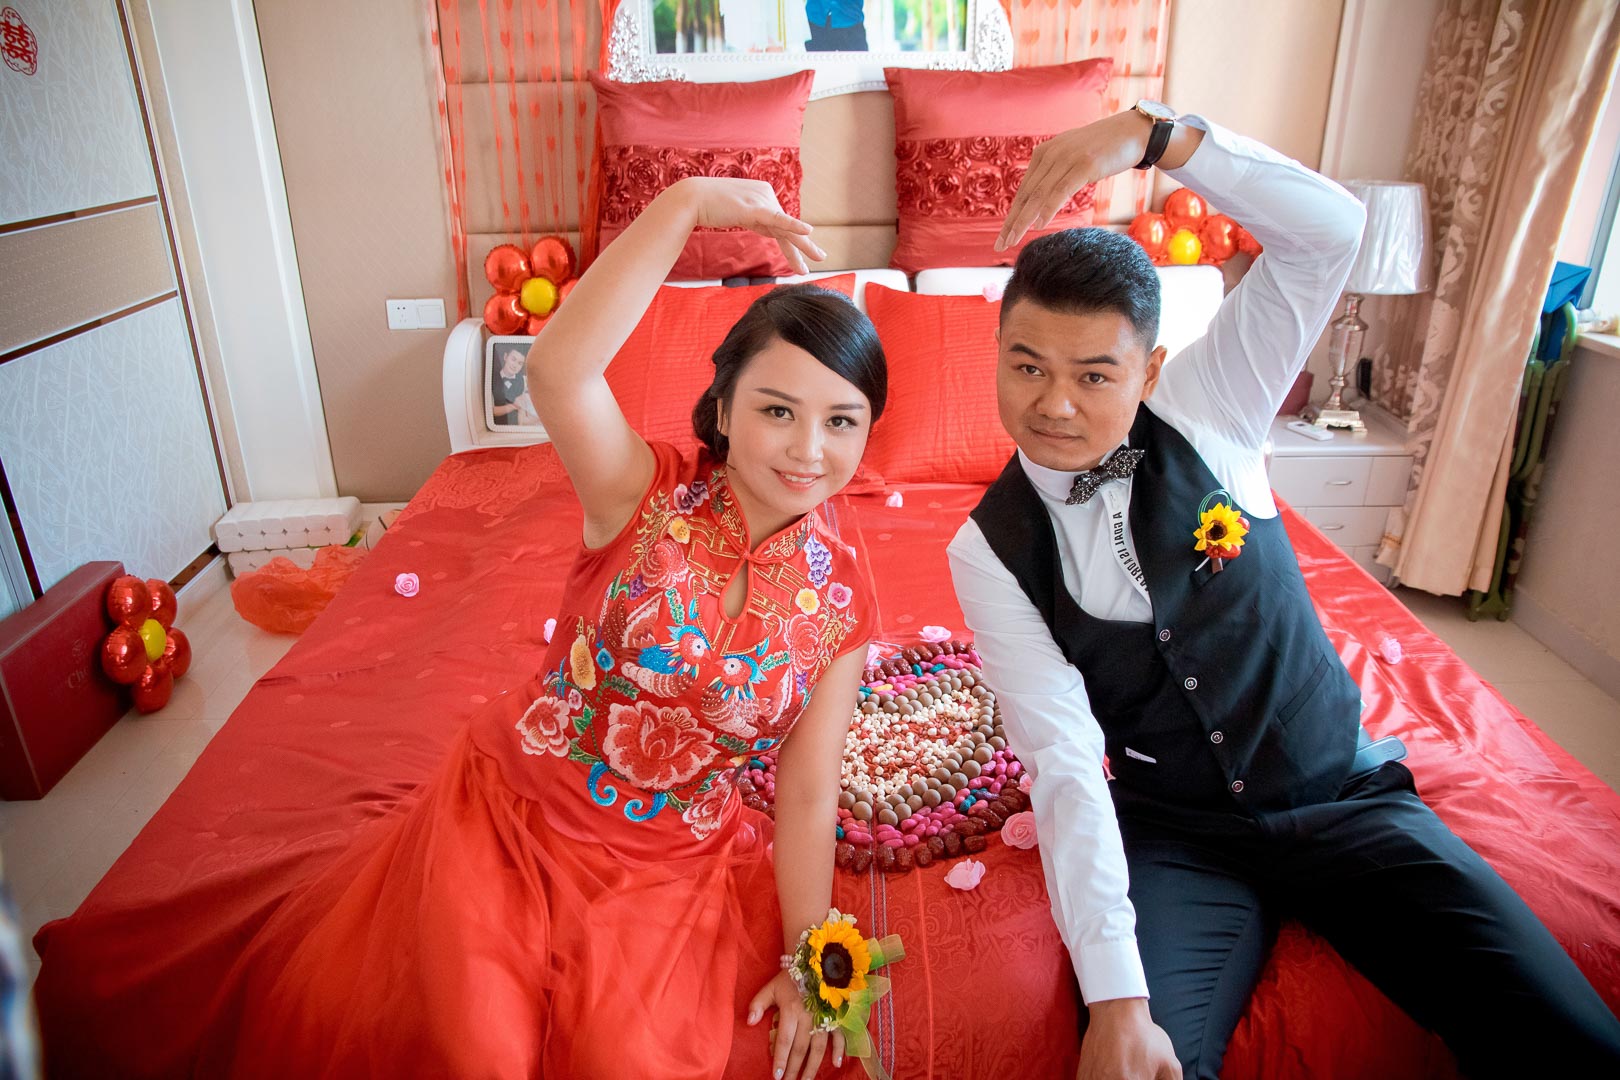 【超划算】精修100张照片仅1280元—纪实风格婚礼摄影